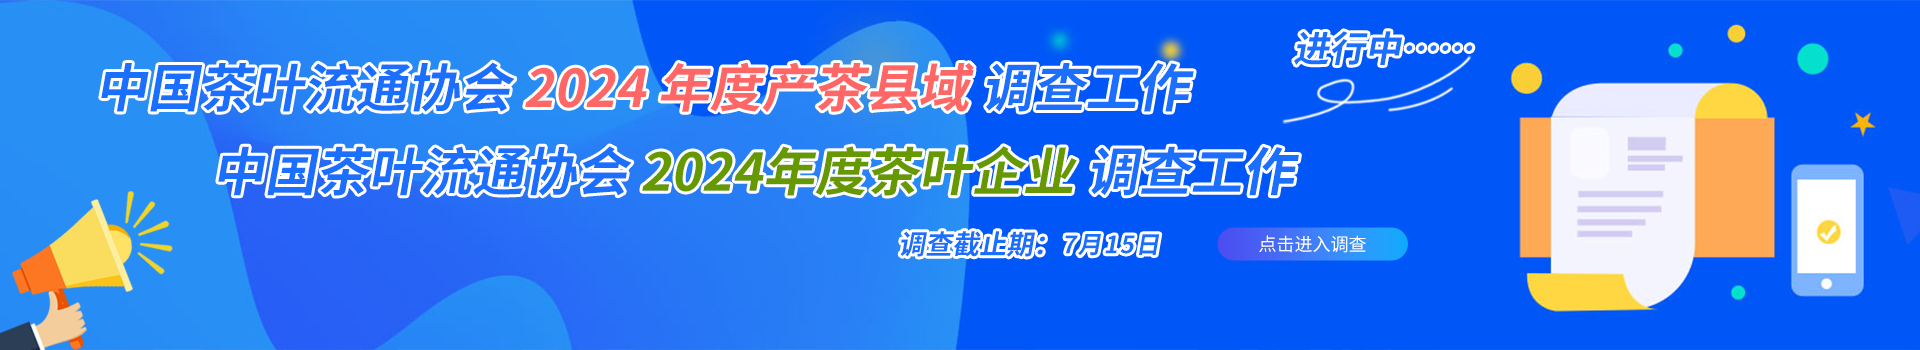 中国茶叶流通协会官方服务平台——为全行业提供便捷化一站式服务